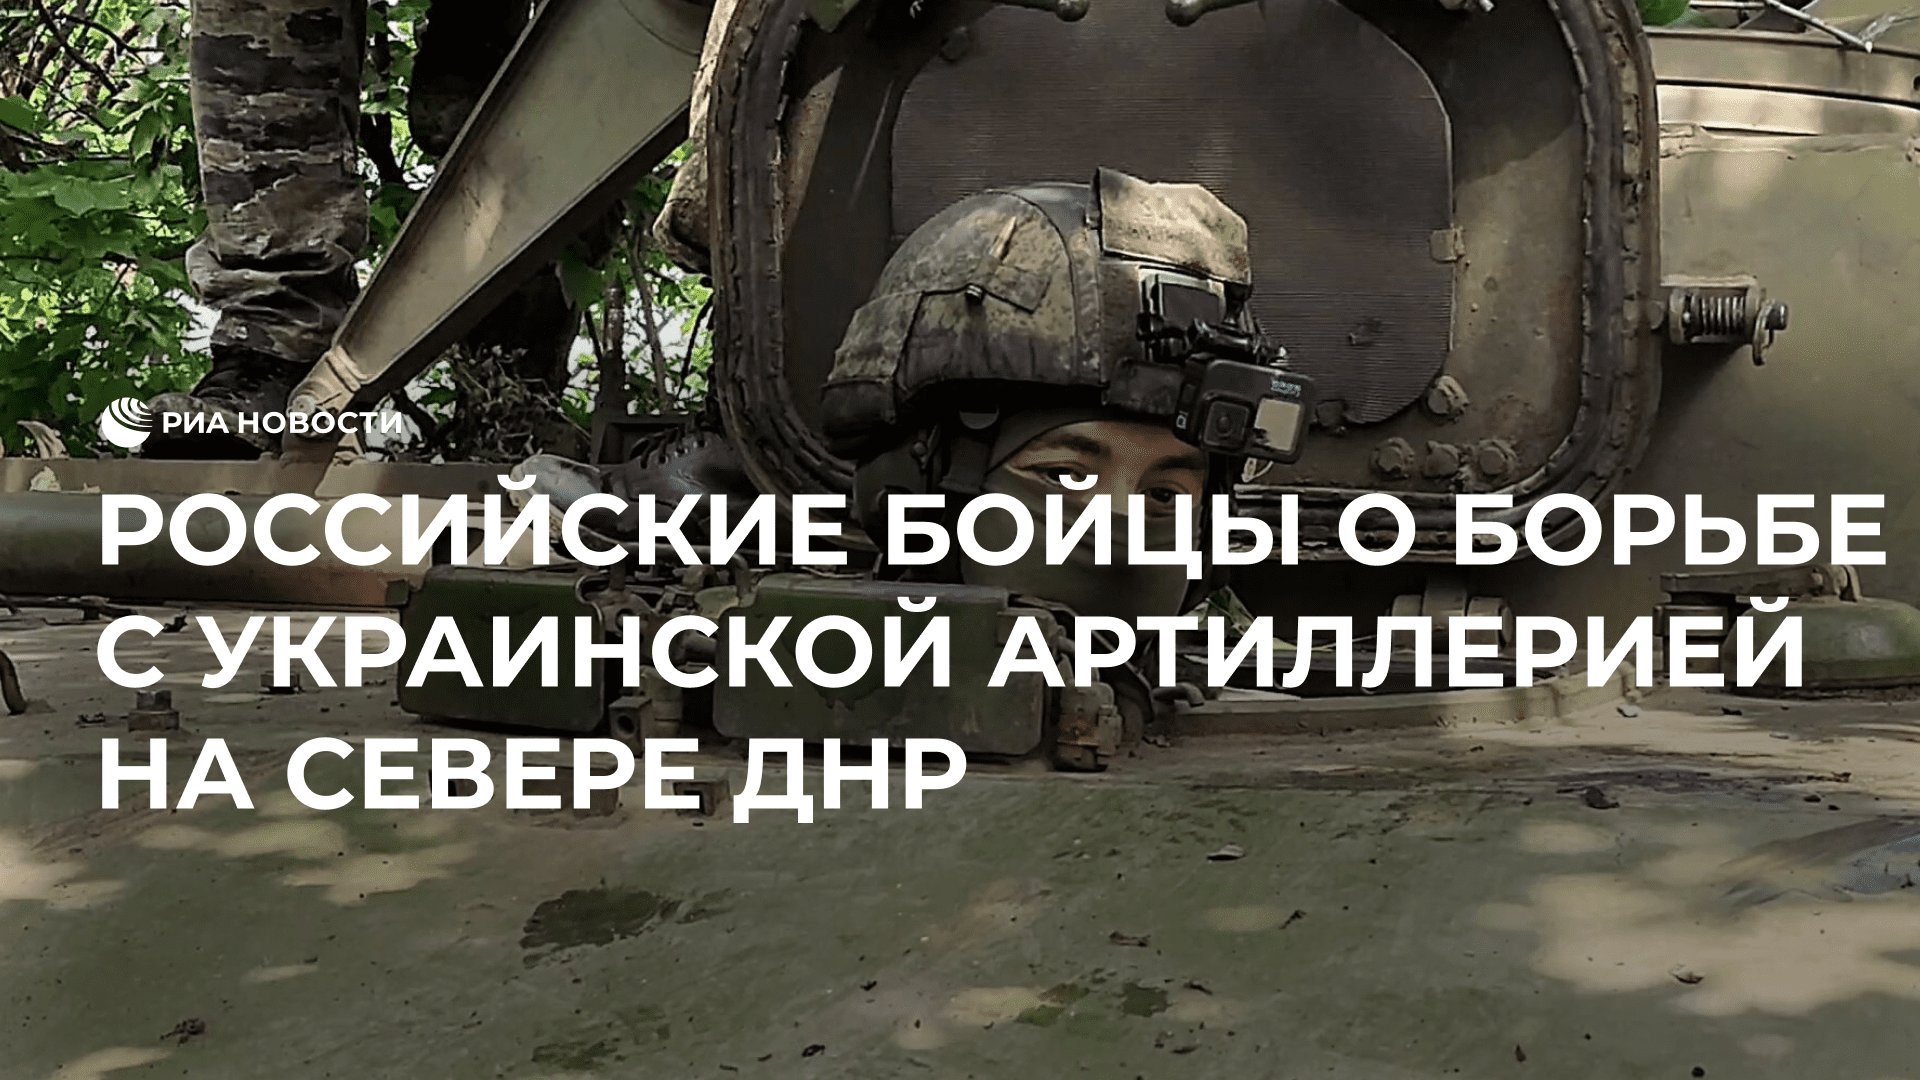 Российские бойцы о борьбе с украинской артиллерией на севере ДНР